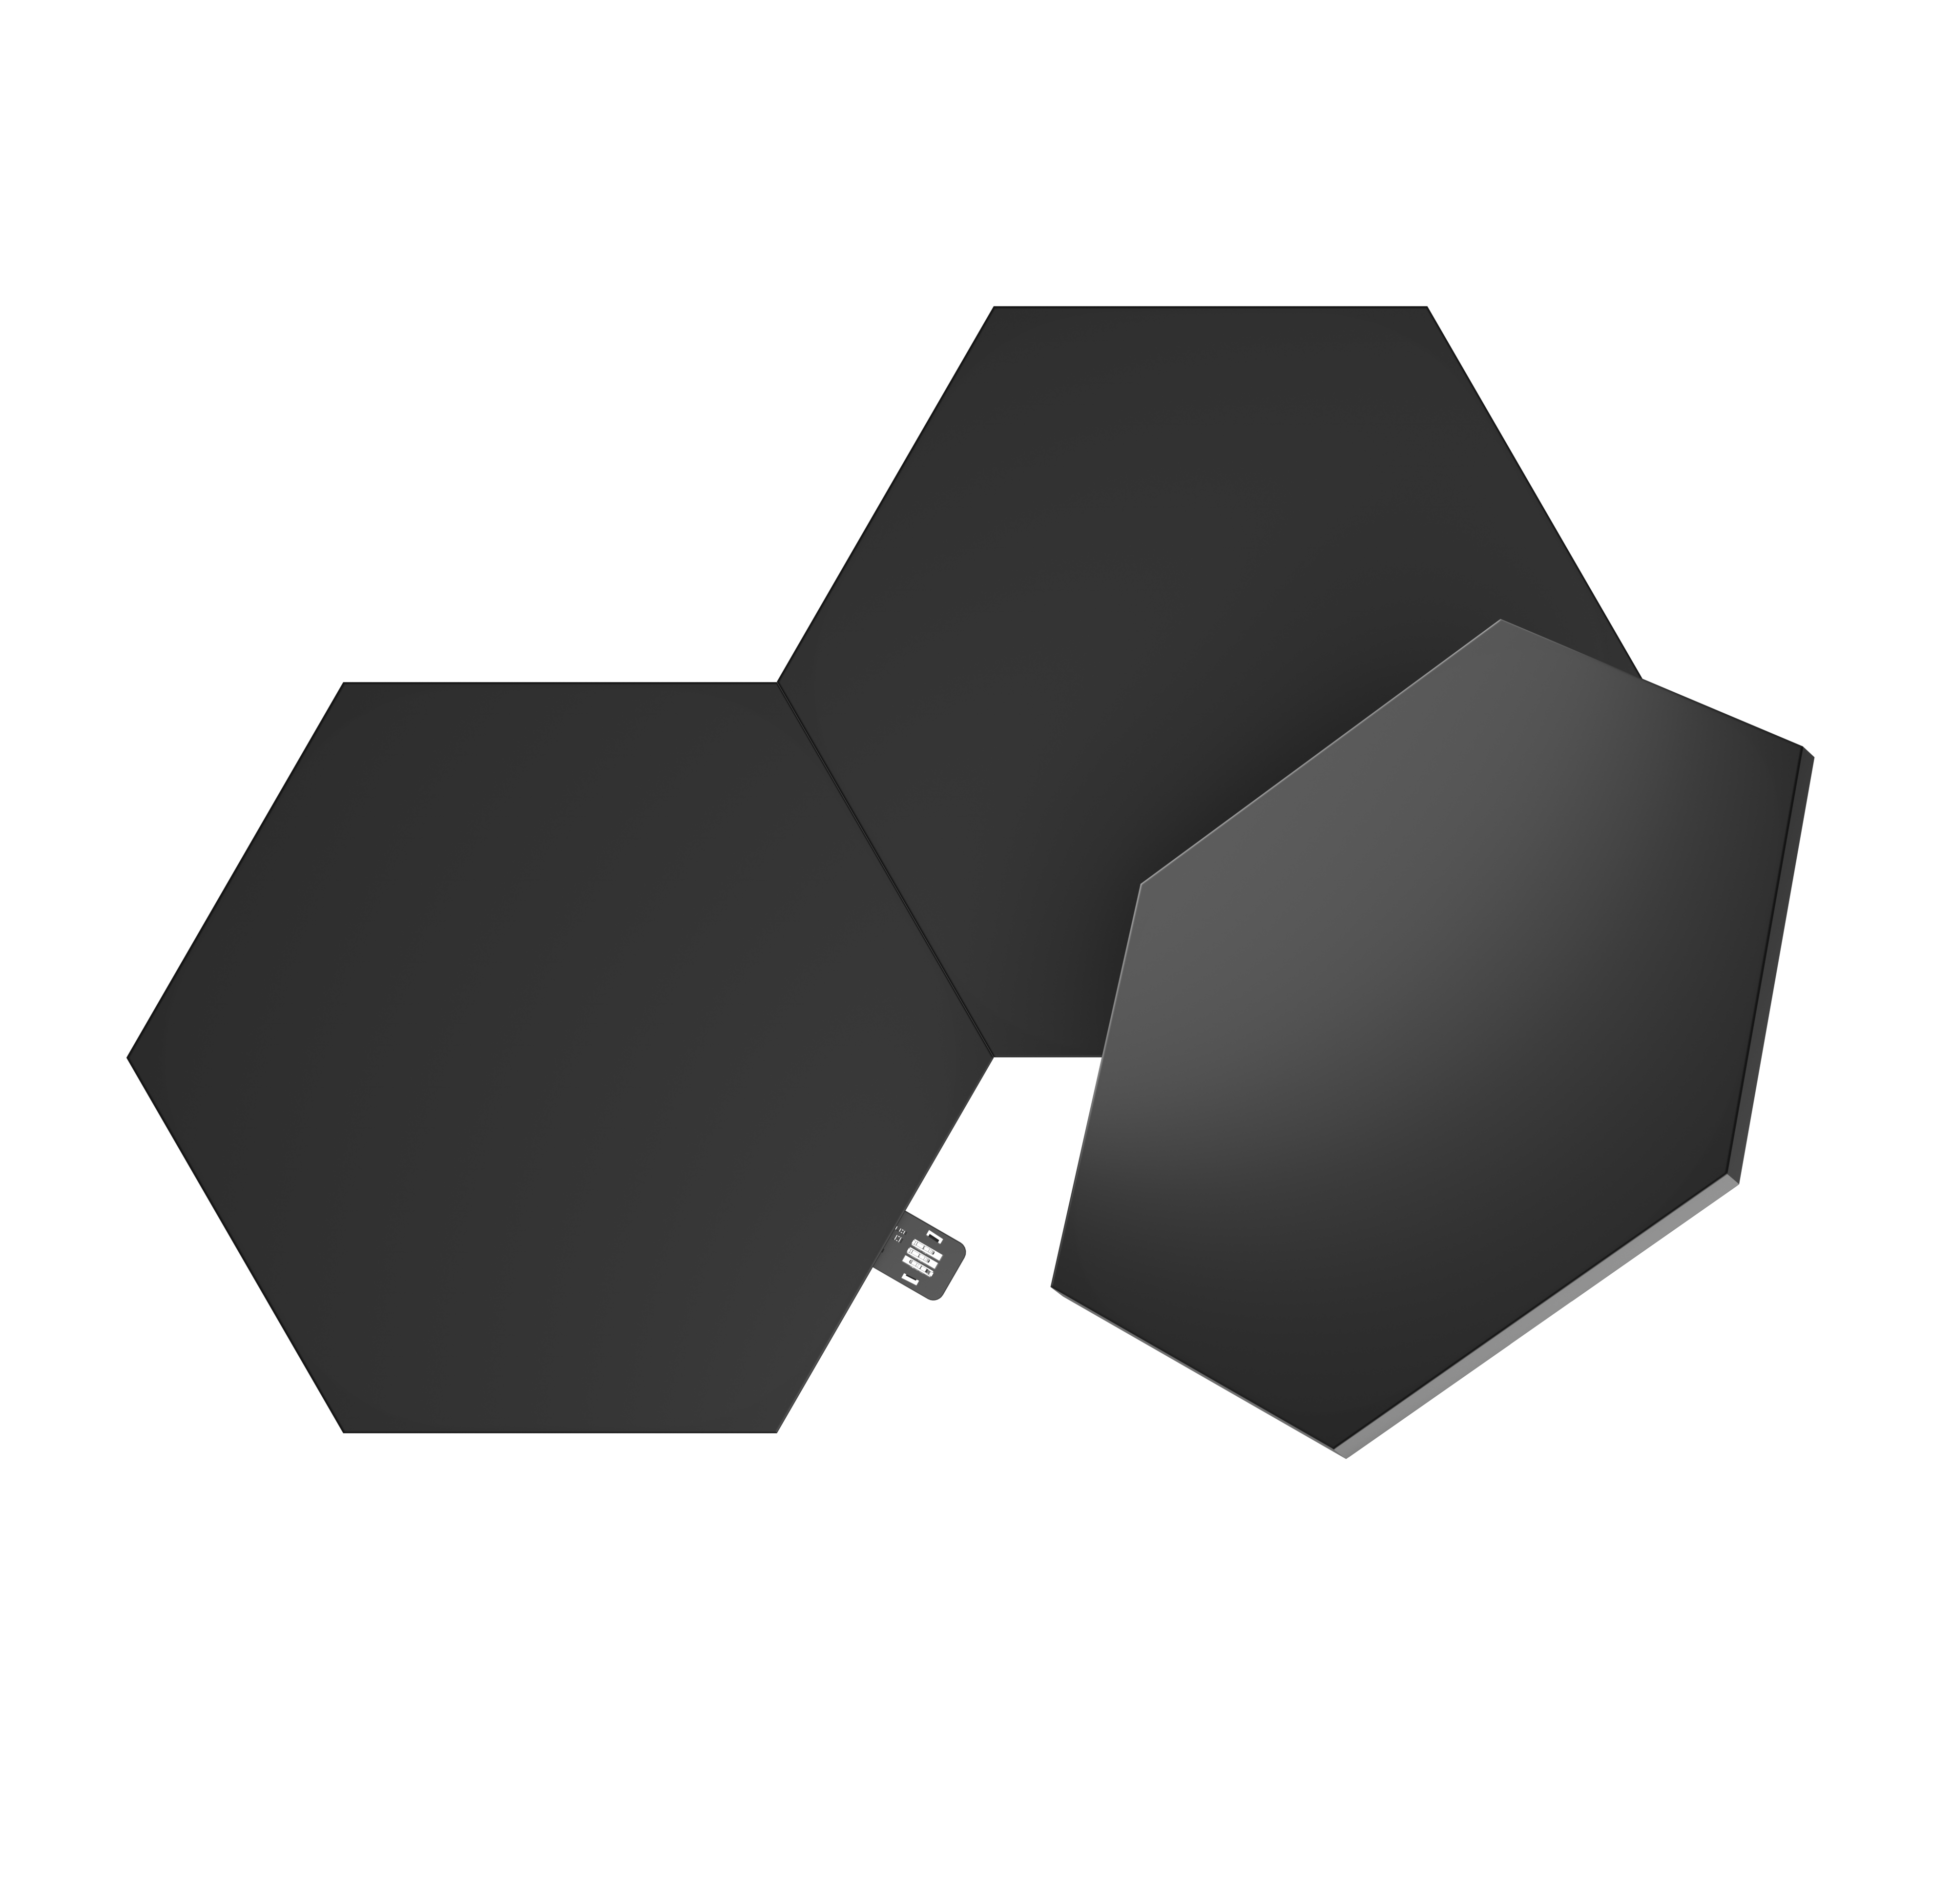 Nanoleaf Shapes ブラックヘキサゴン 拡張パック(3枚入り)